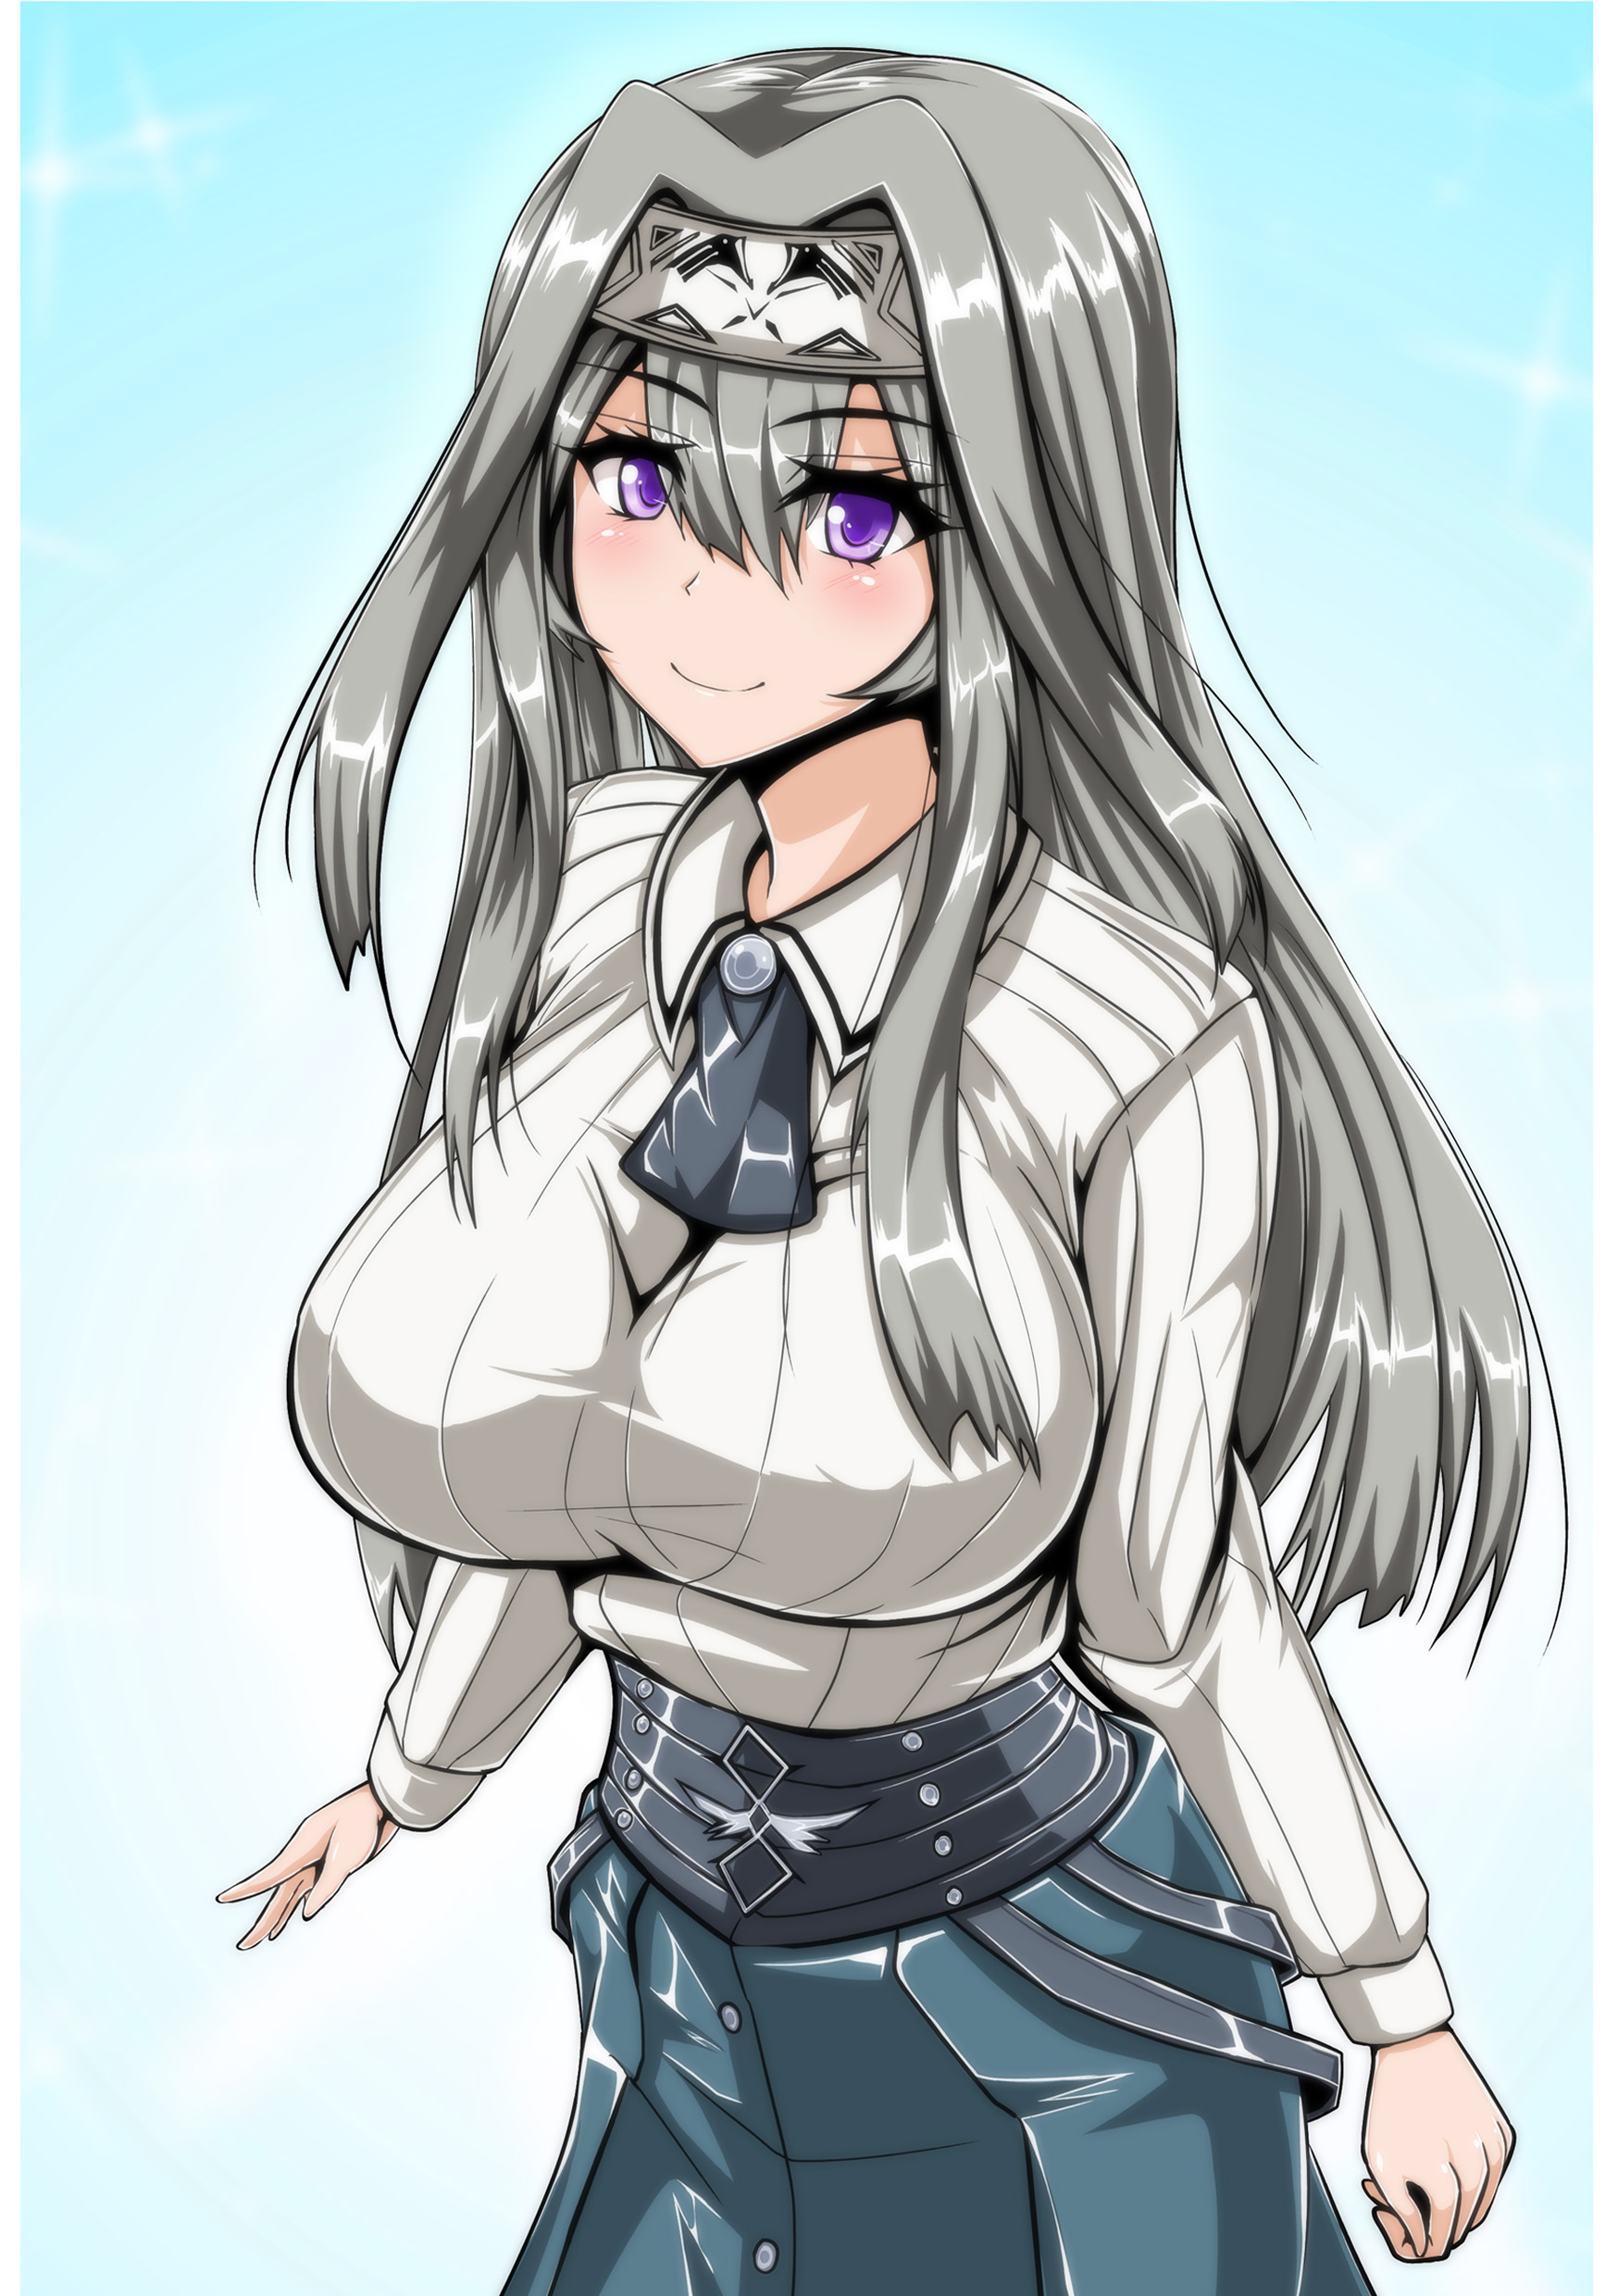 Exosister Irene Long Hair Gray Hair Yu Gi Oh Anime Anime Girls Trading Card Games Artwork